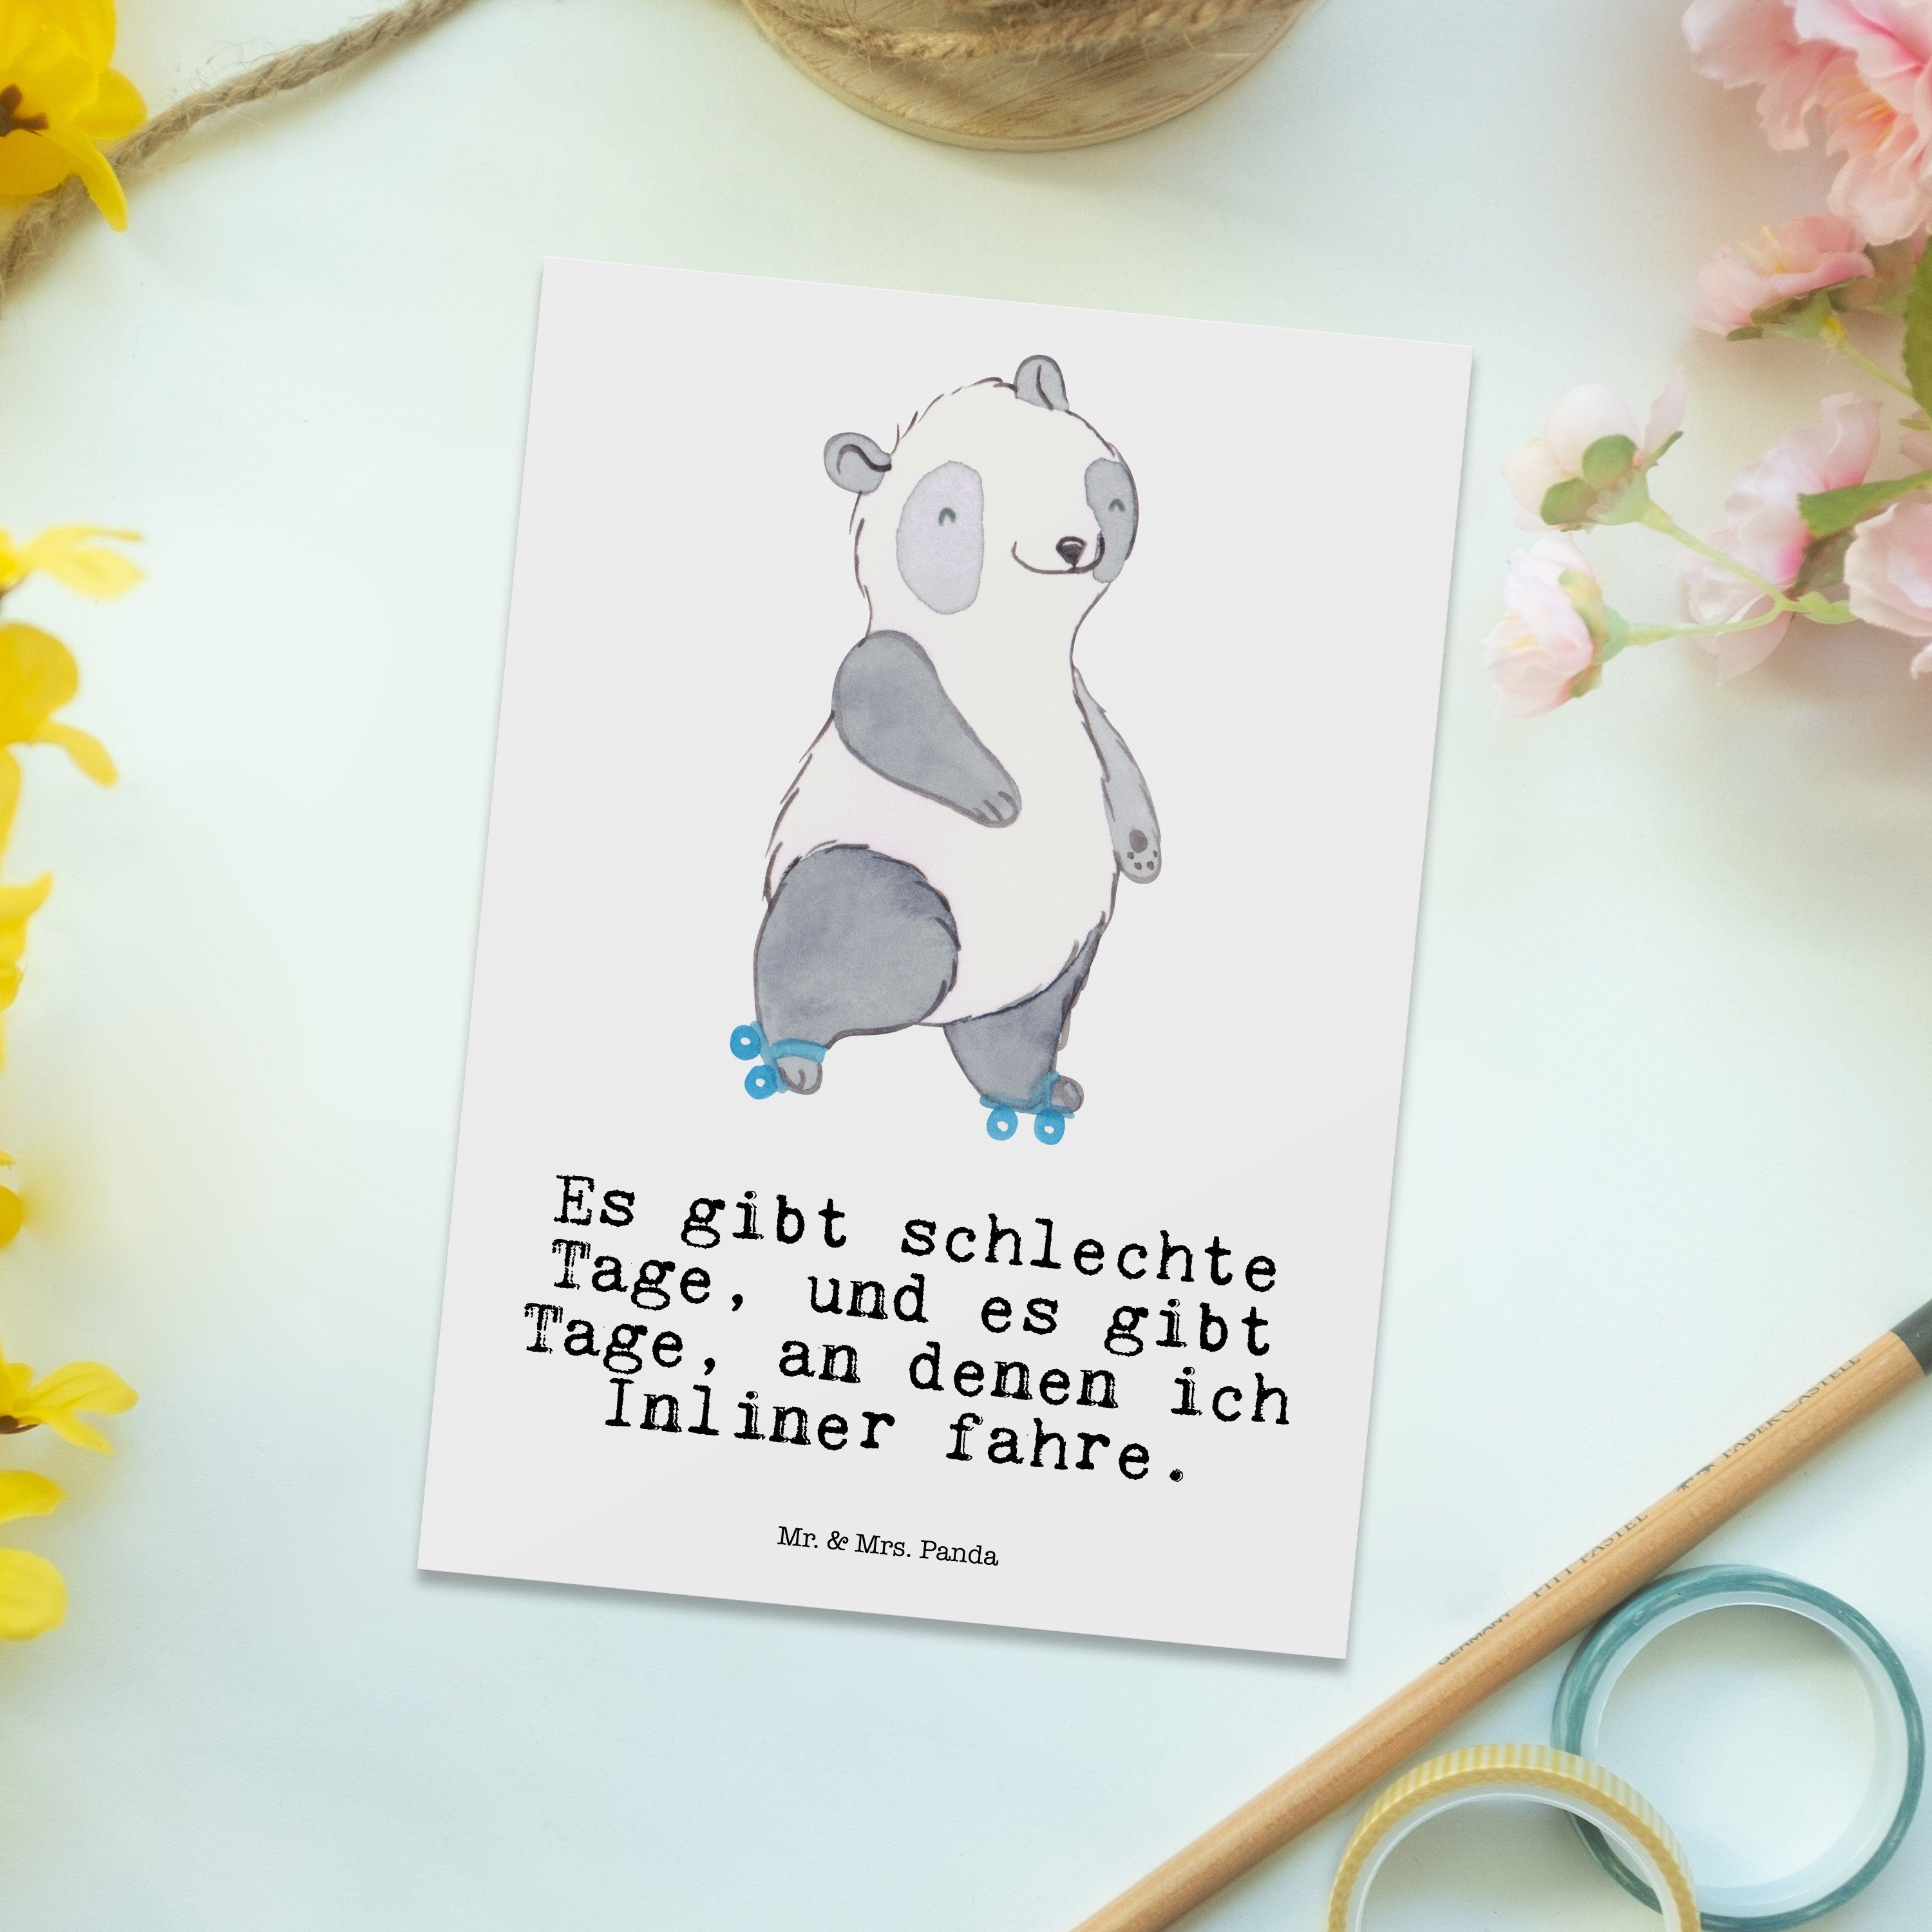 fahren Mr. Panda - Panda & Inliner Rollerblades, Mrs. Schenken - Postkarte Geschenk, Weiß Tage